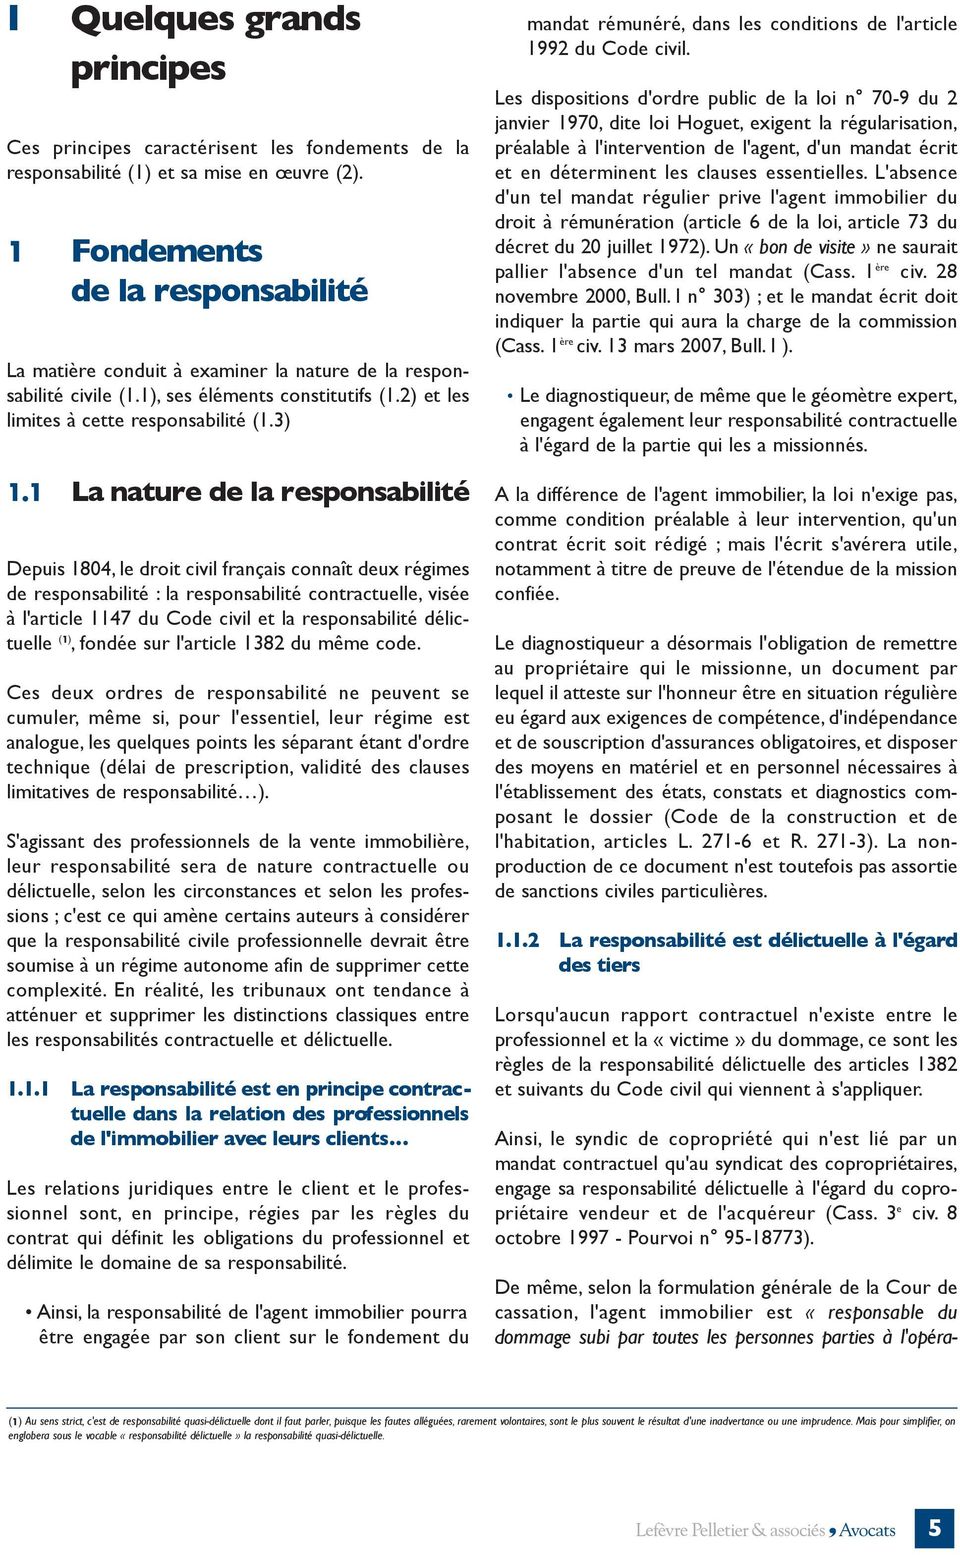 1 La nature de la responsabilité Depuis 1804, le droit civil français connaît deux régimes de responsabilité : la responsabilité contractuelle, visée à l'article 1147 du Code civil et la